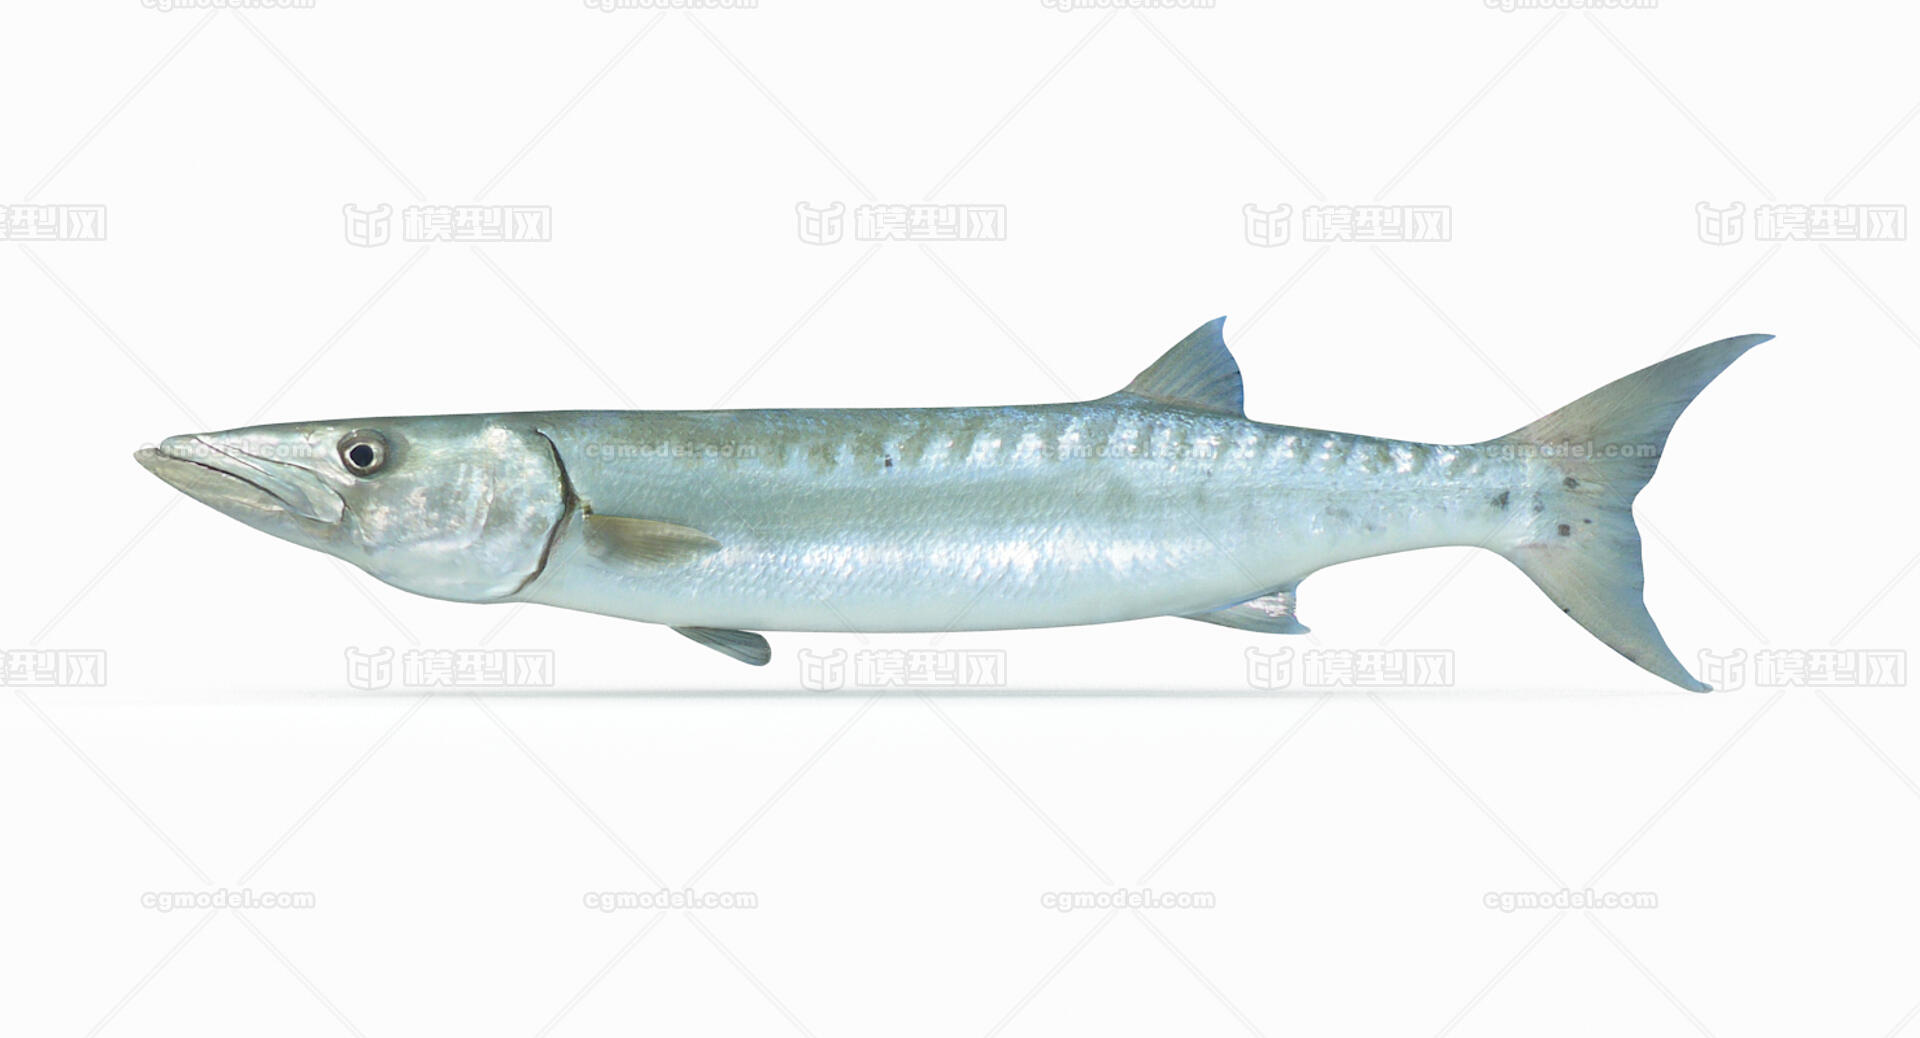 梭子鱼鱼 库存照片. 图片 包括有 五颜六色, 深深, 敌意, 蓝色, 黑暗, 本质, 盐水, 背包, 海洋 - 36100786